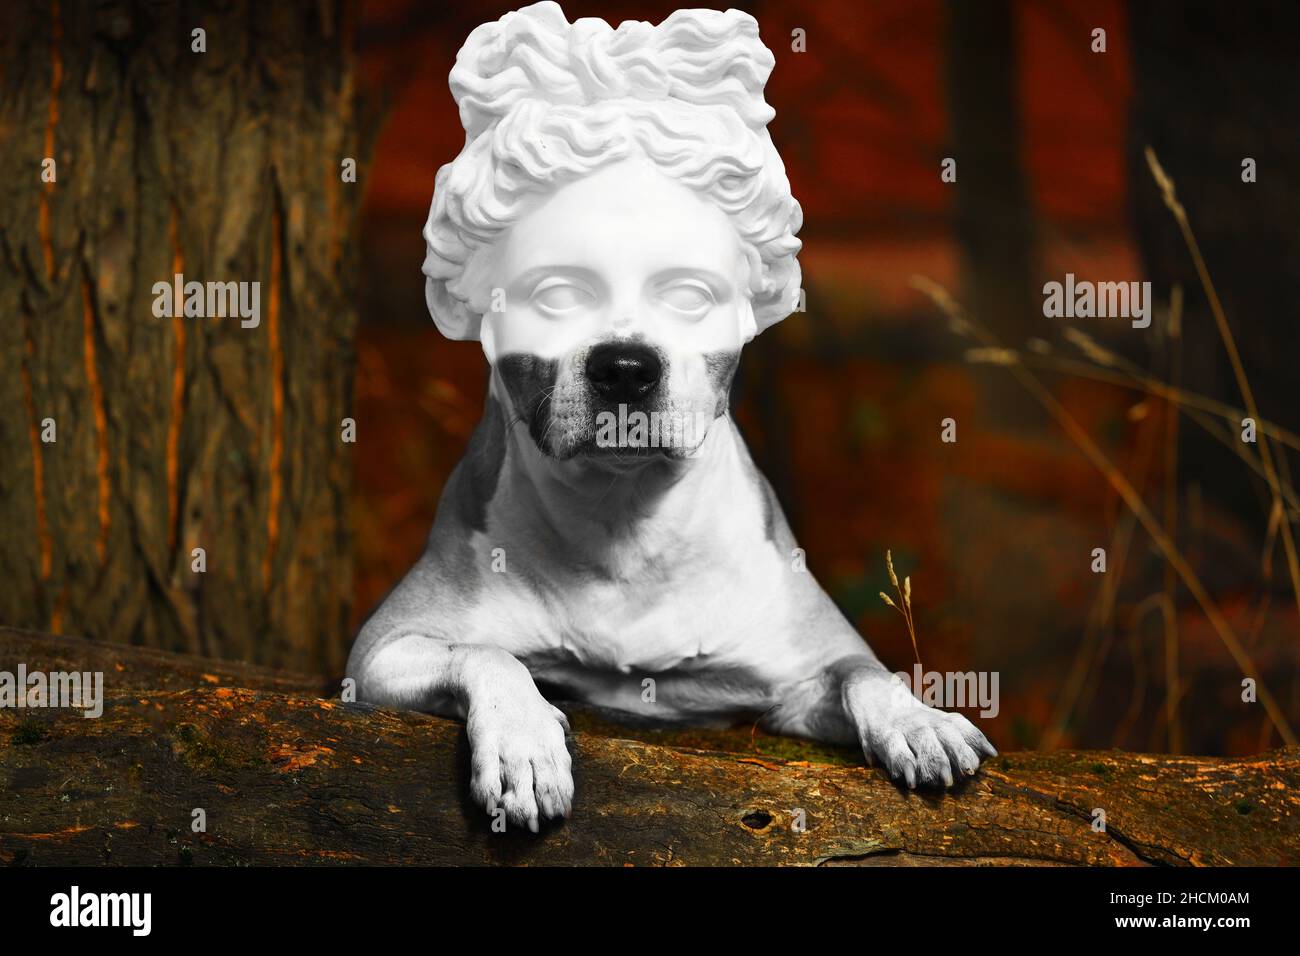 PIT Bull Terrier chien avec une tête de statue en plâtre dans la nature.Photo de haute qualité Banque D'Images